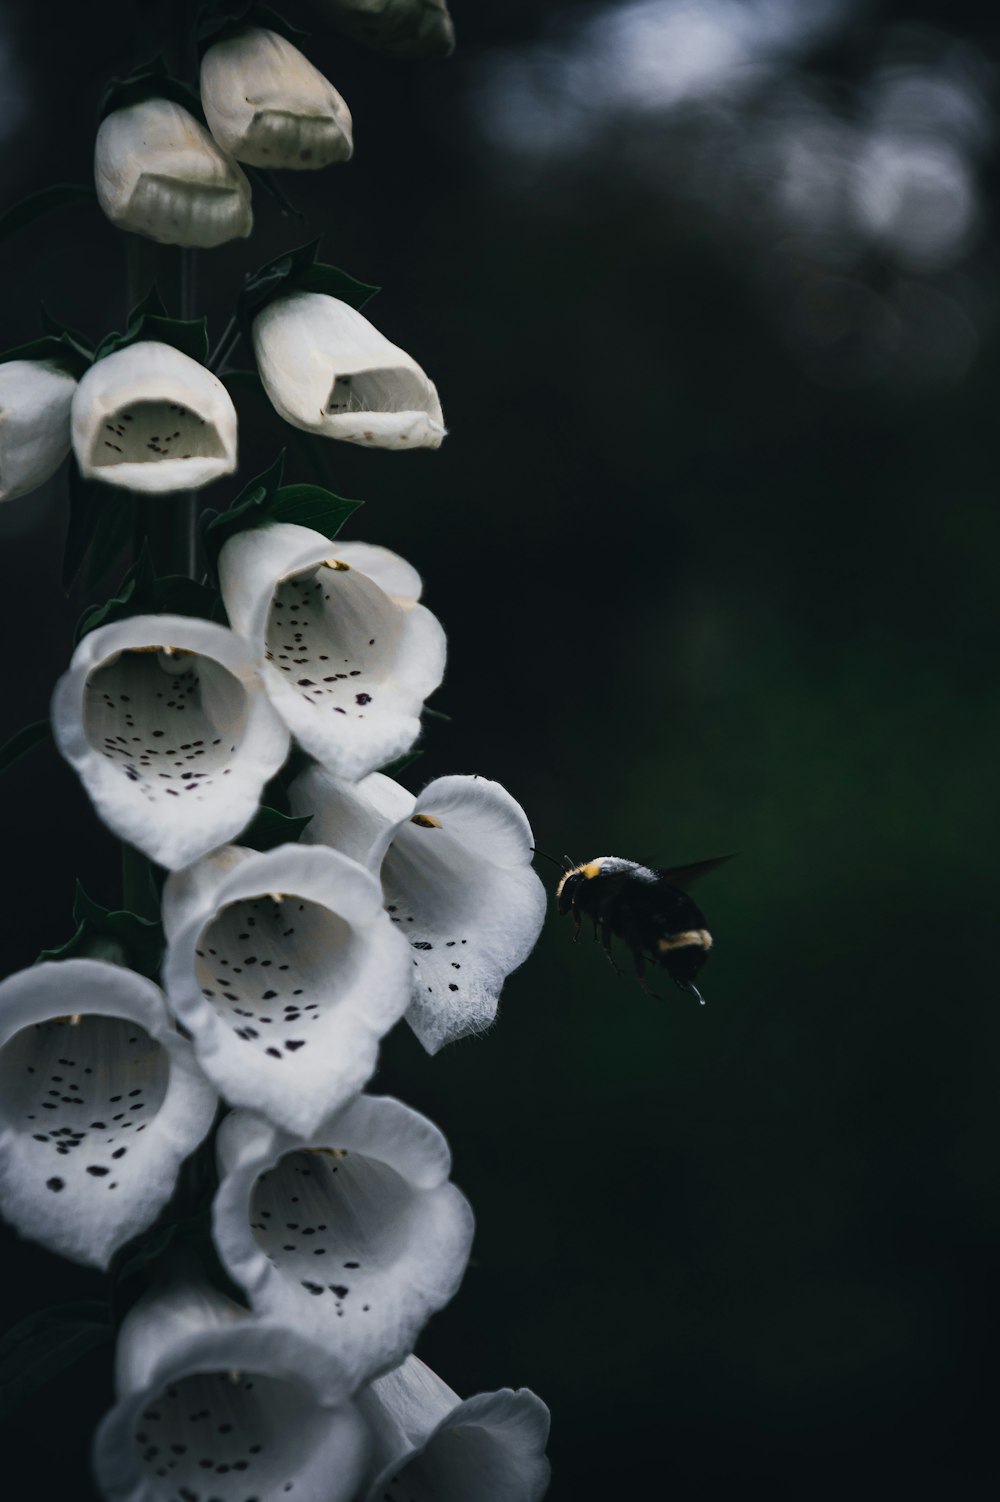 un'ape su un fiore